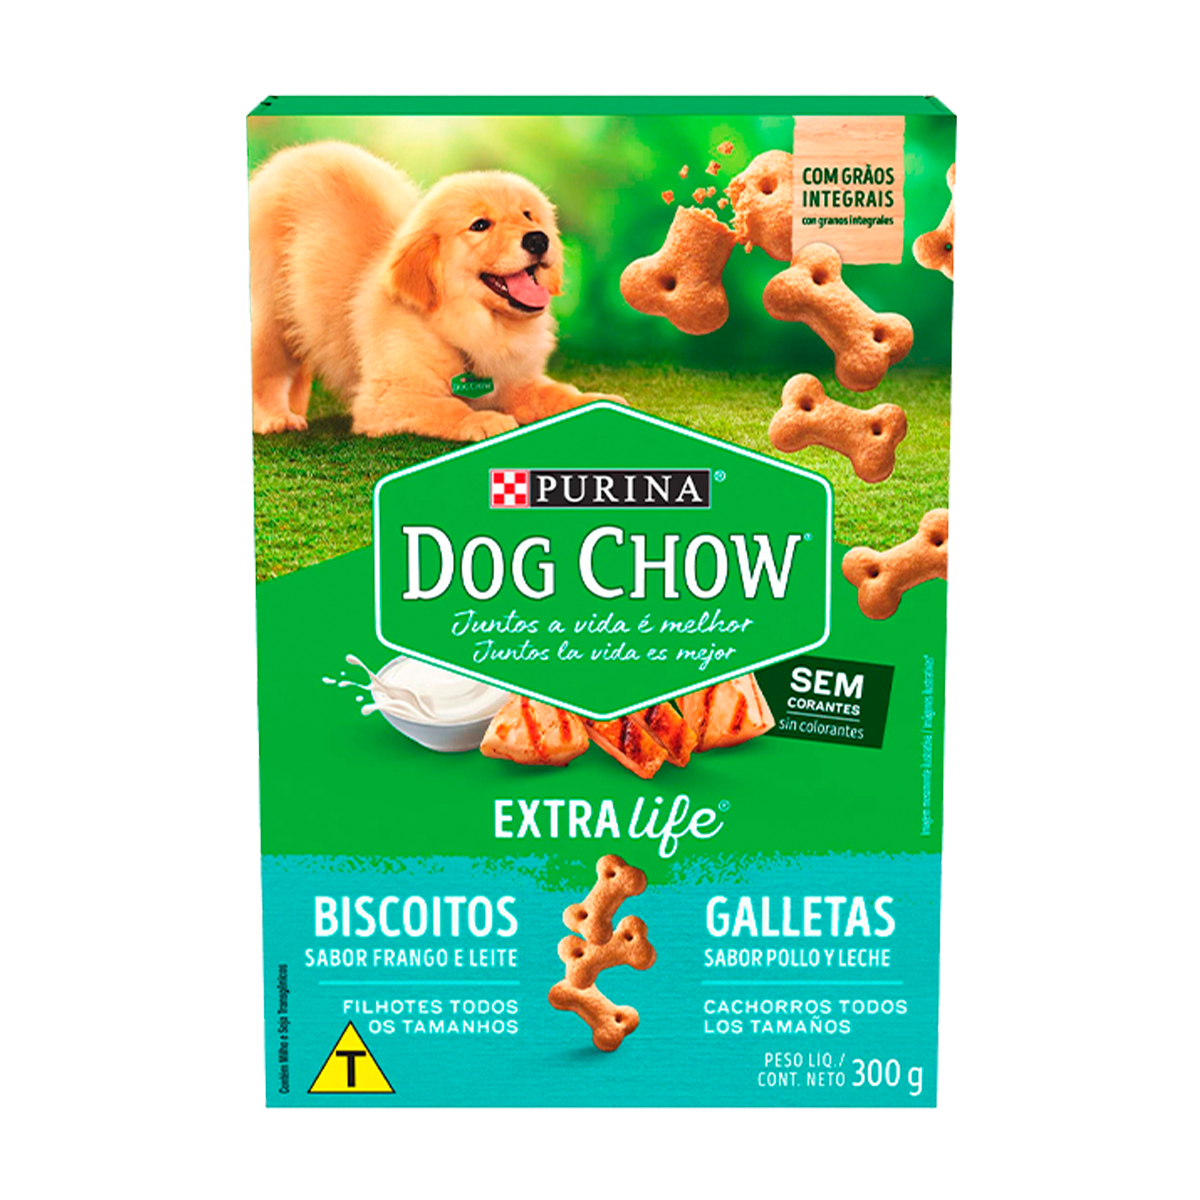 purina-dog-chow-galletas-frango-e-leite.png